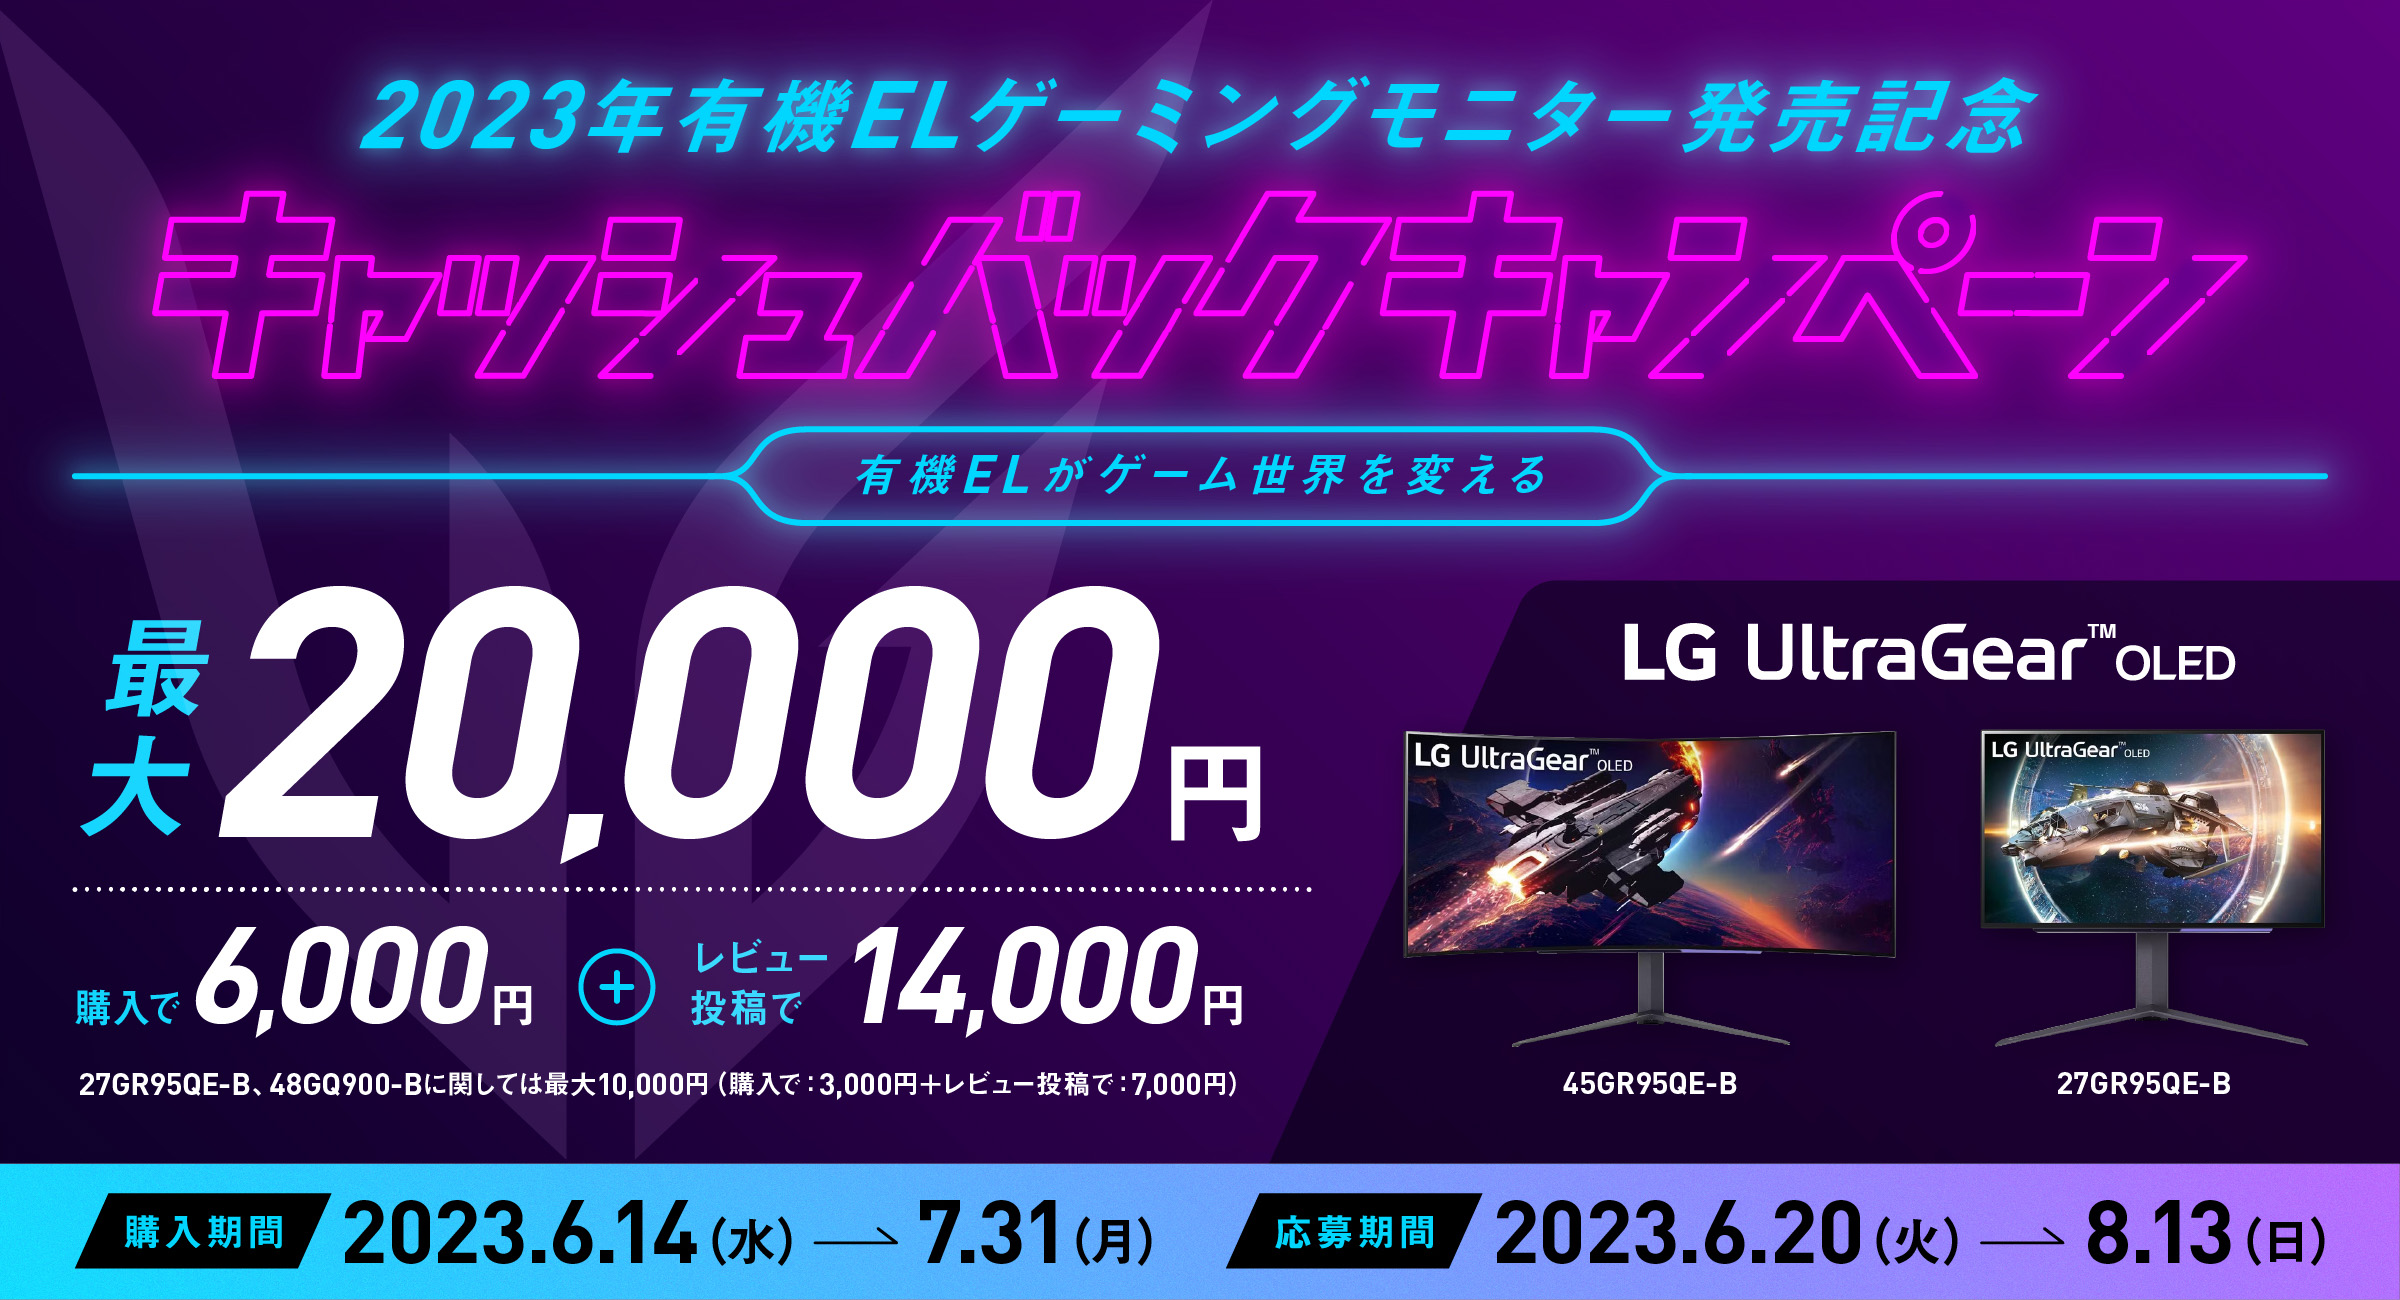 【最大2万円キャッシュバック！】LGの対象モニター購入＆レビュー投稿でキャッシュバック 「LG UltraGear™」有機ELモデル発売記念キャッシュバックキャンペーンが開催中